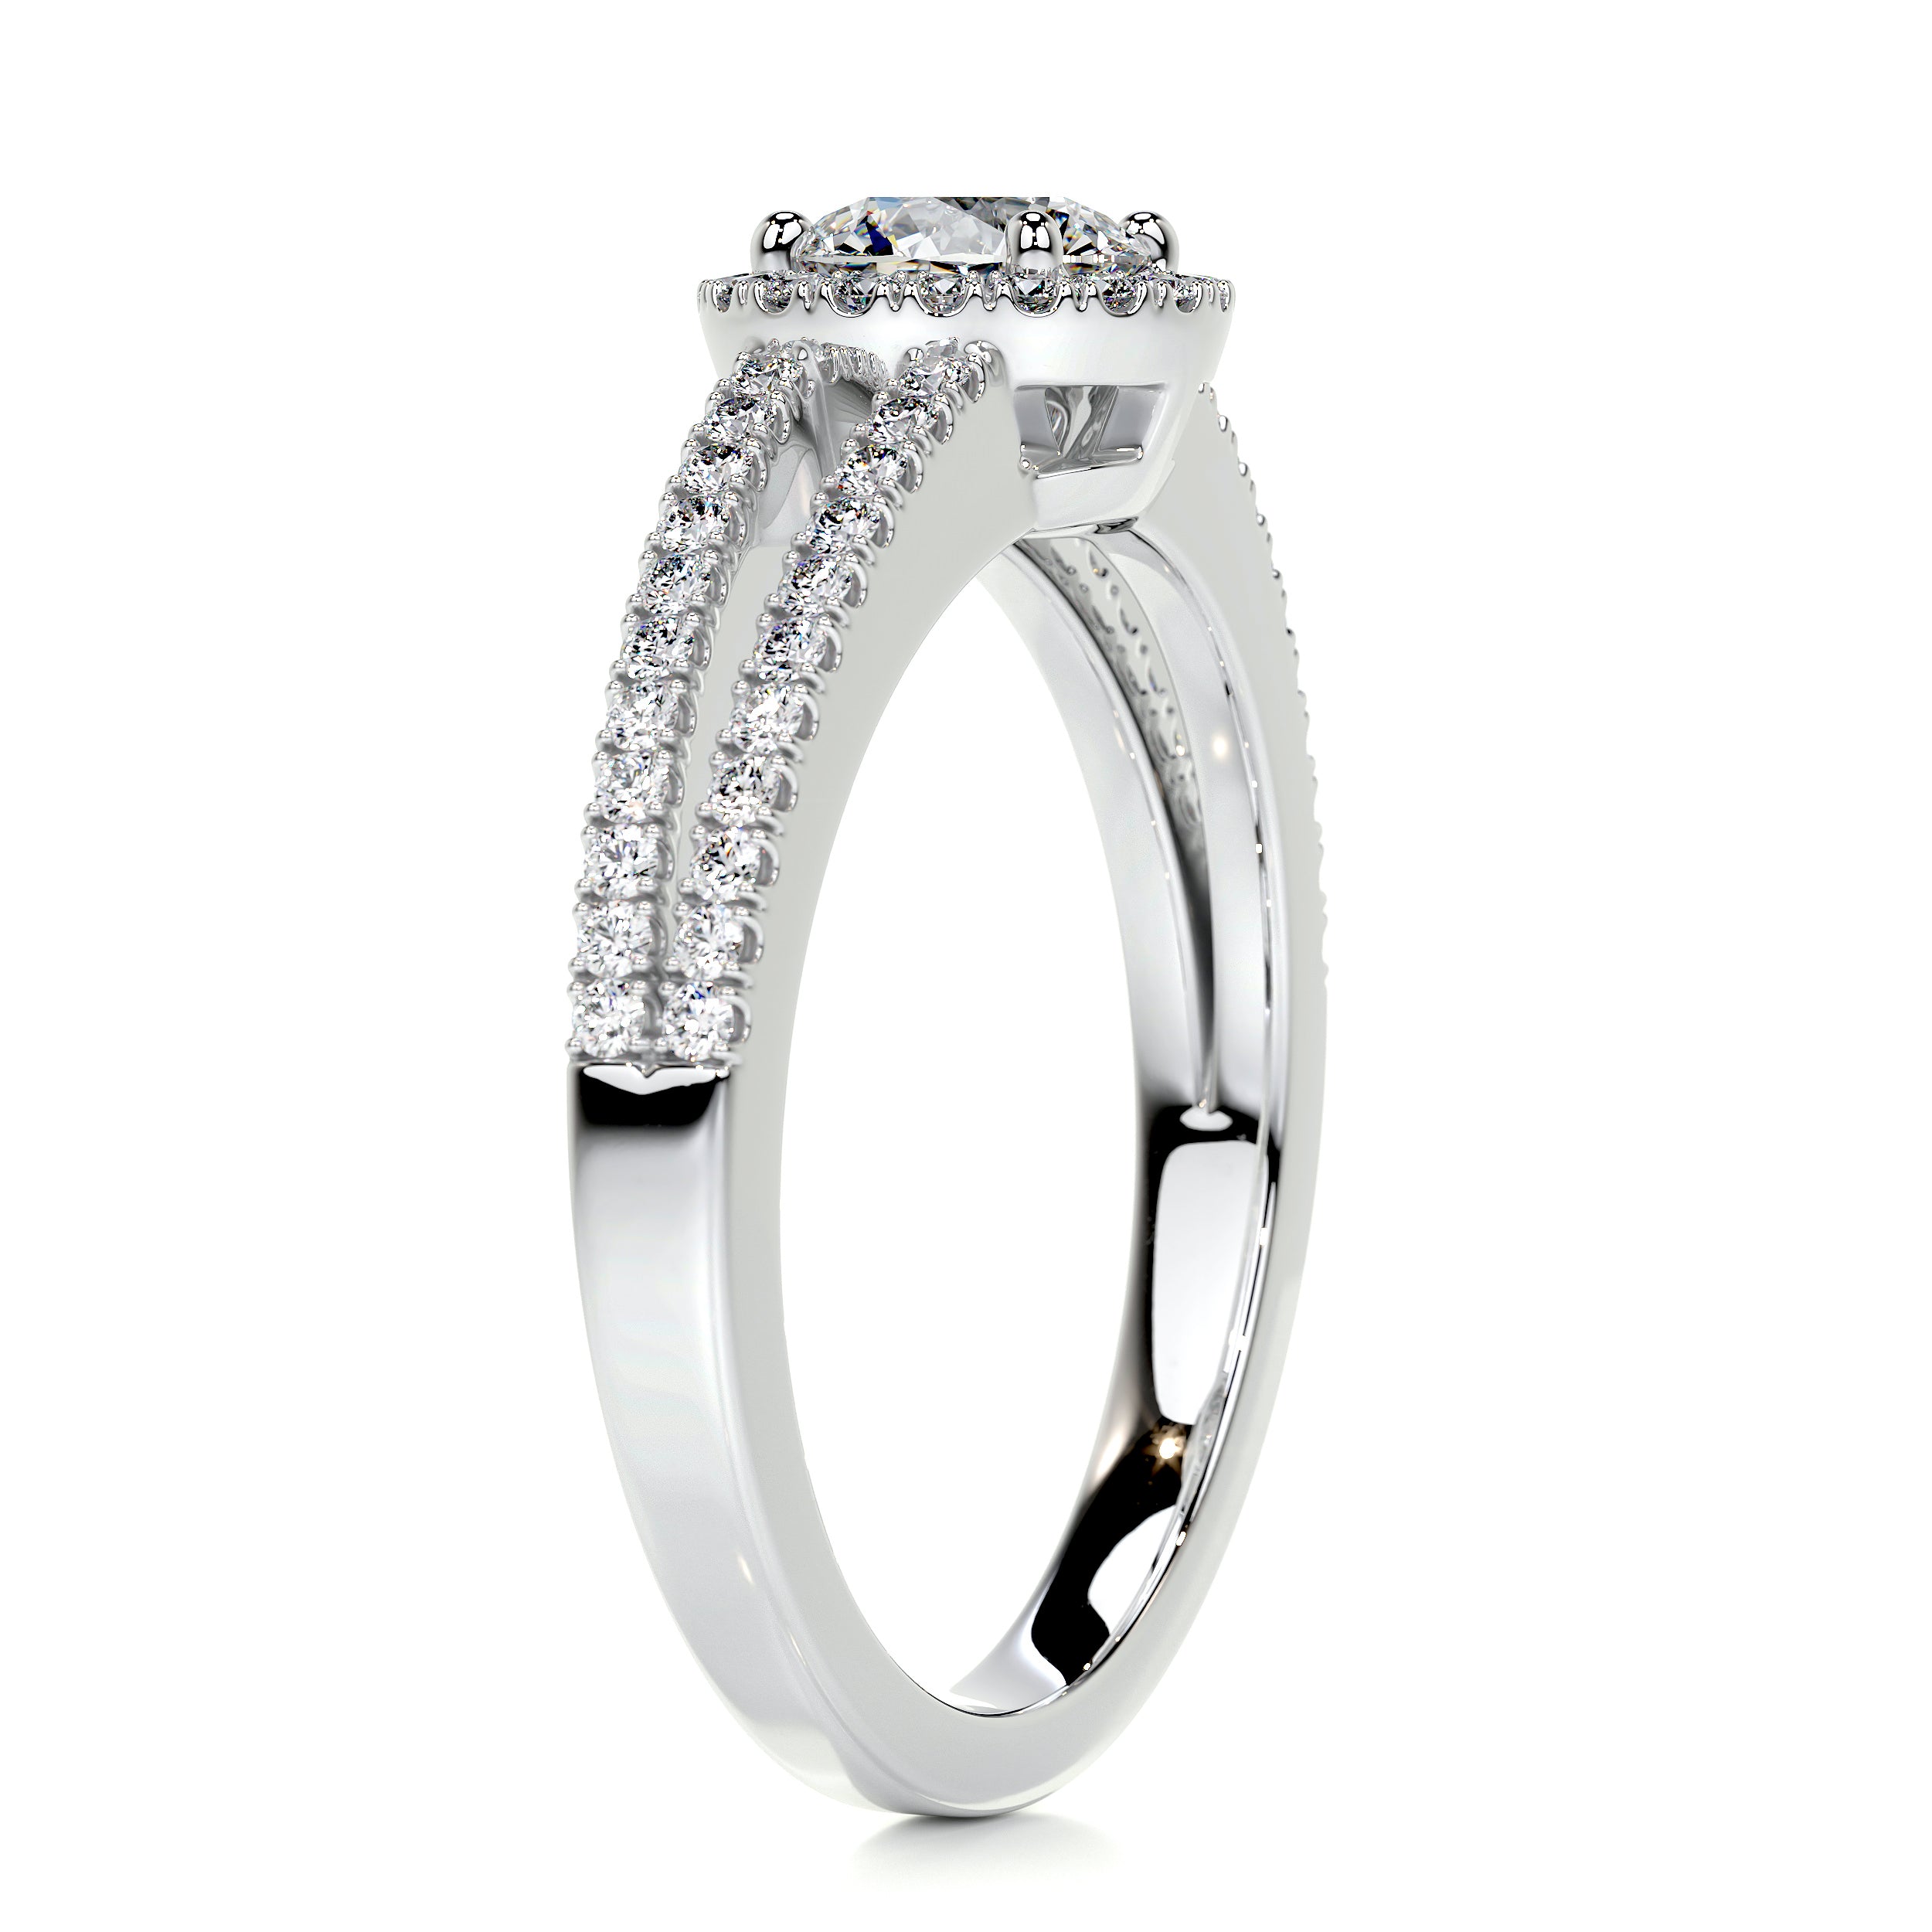 Ruby Diamond Engagement Ring   (0.80 Carat) -14K White Gold